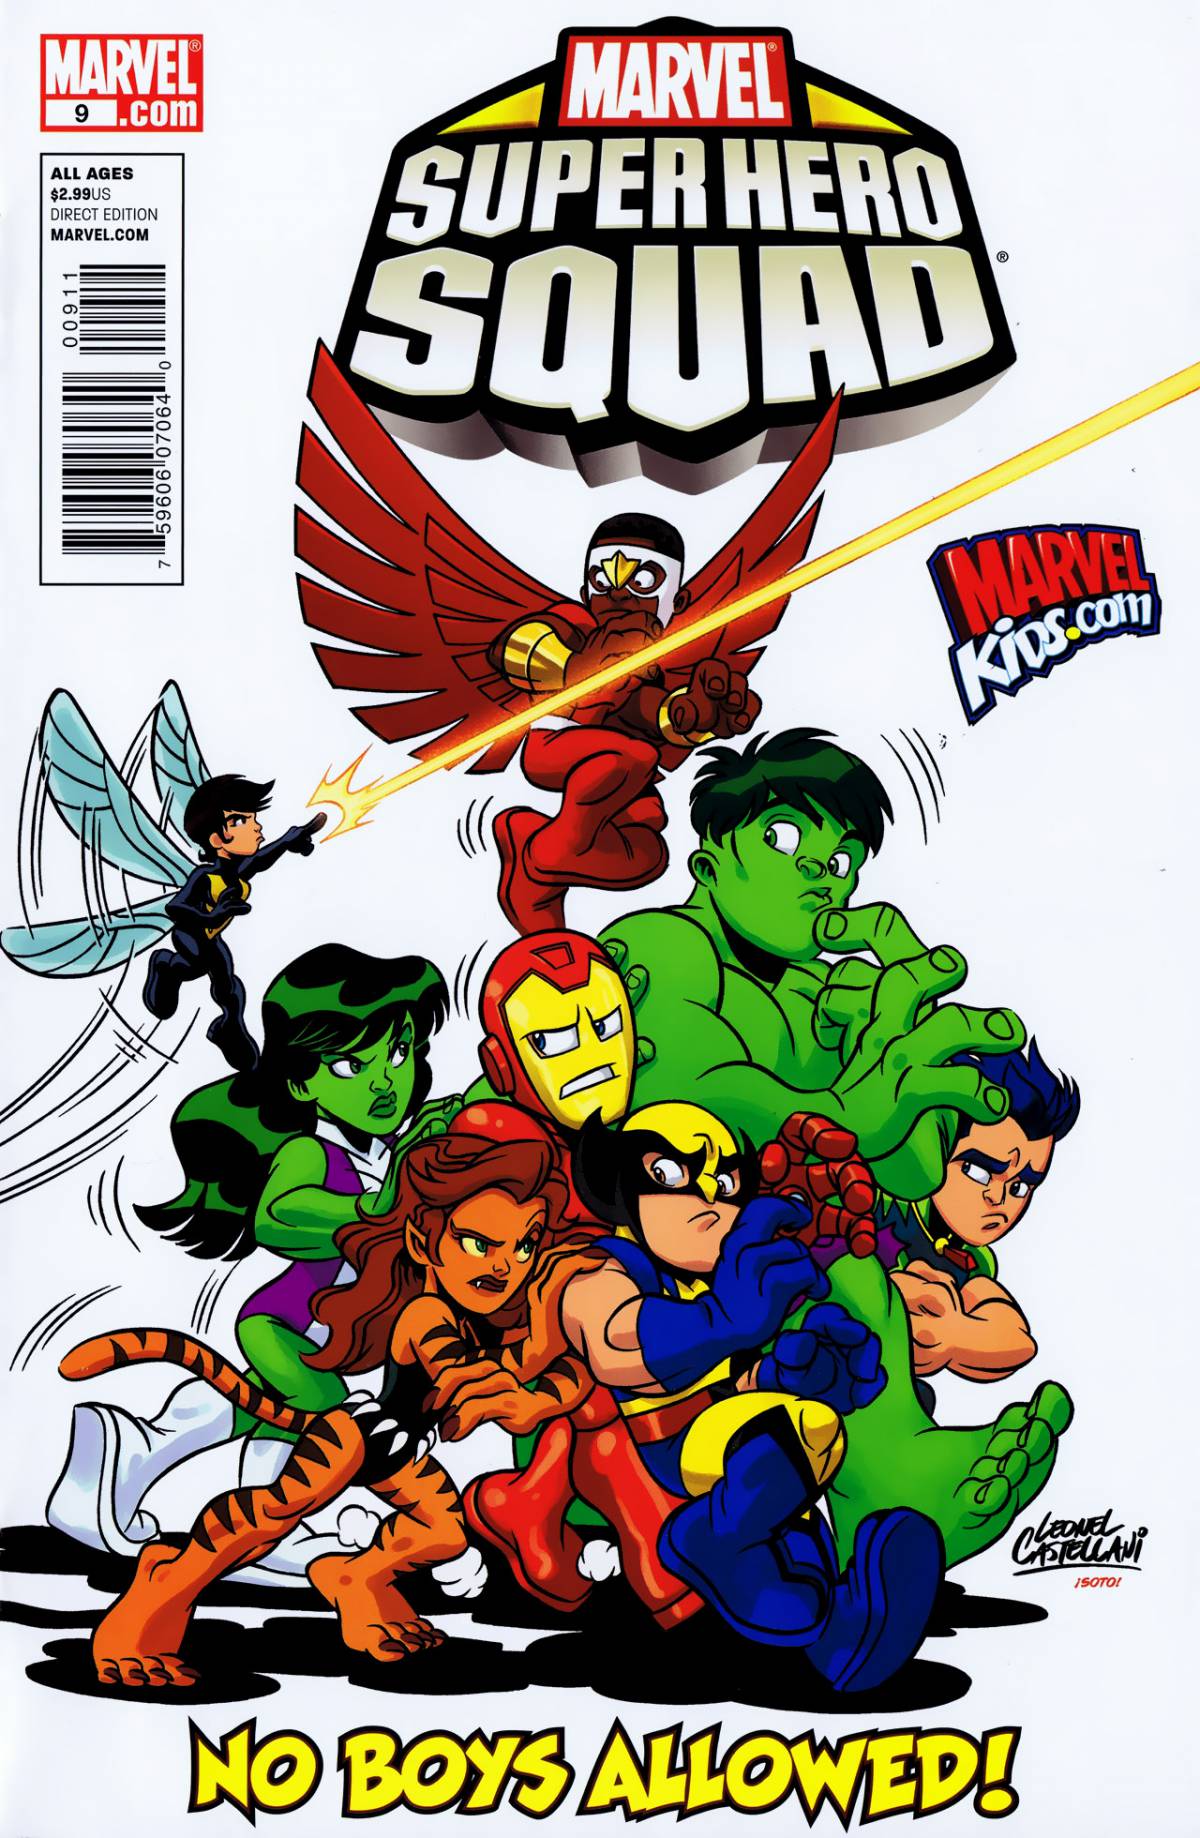 Marvel SUPER HERO SQUAD #9